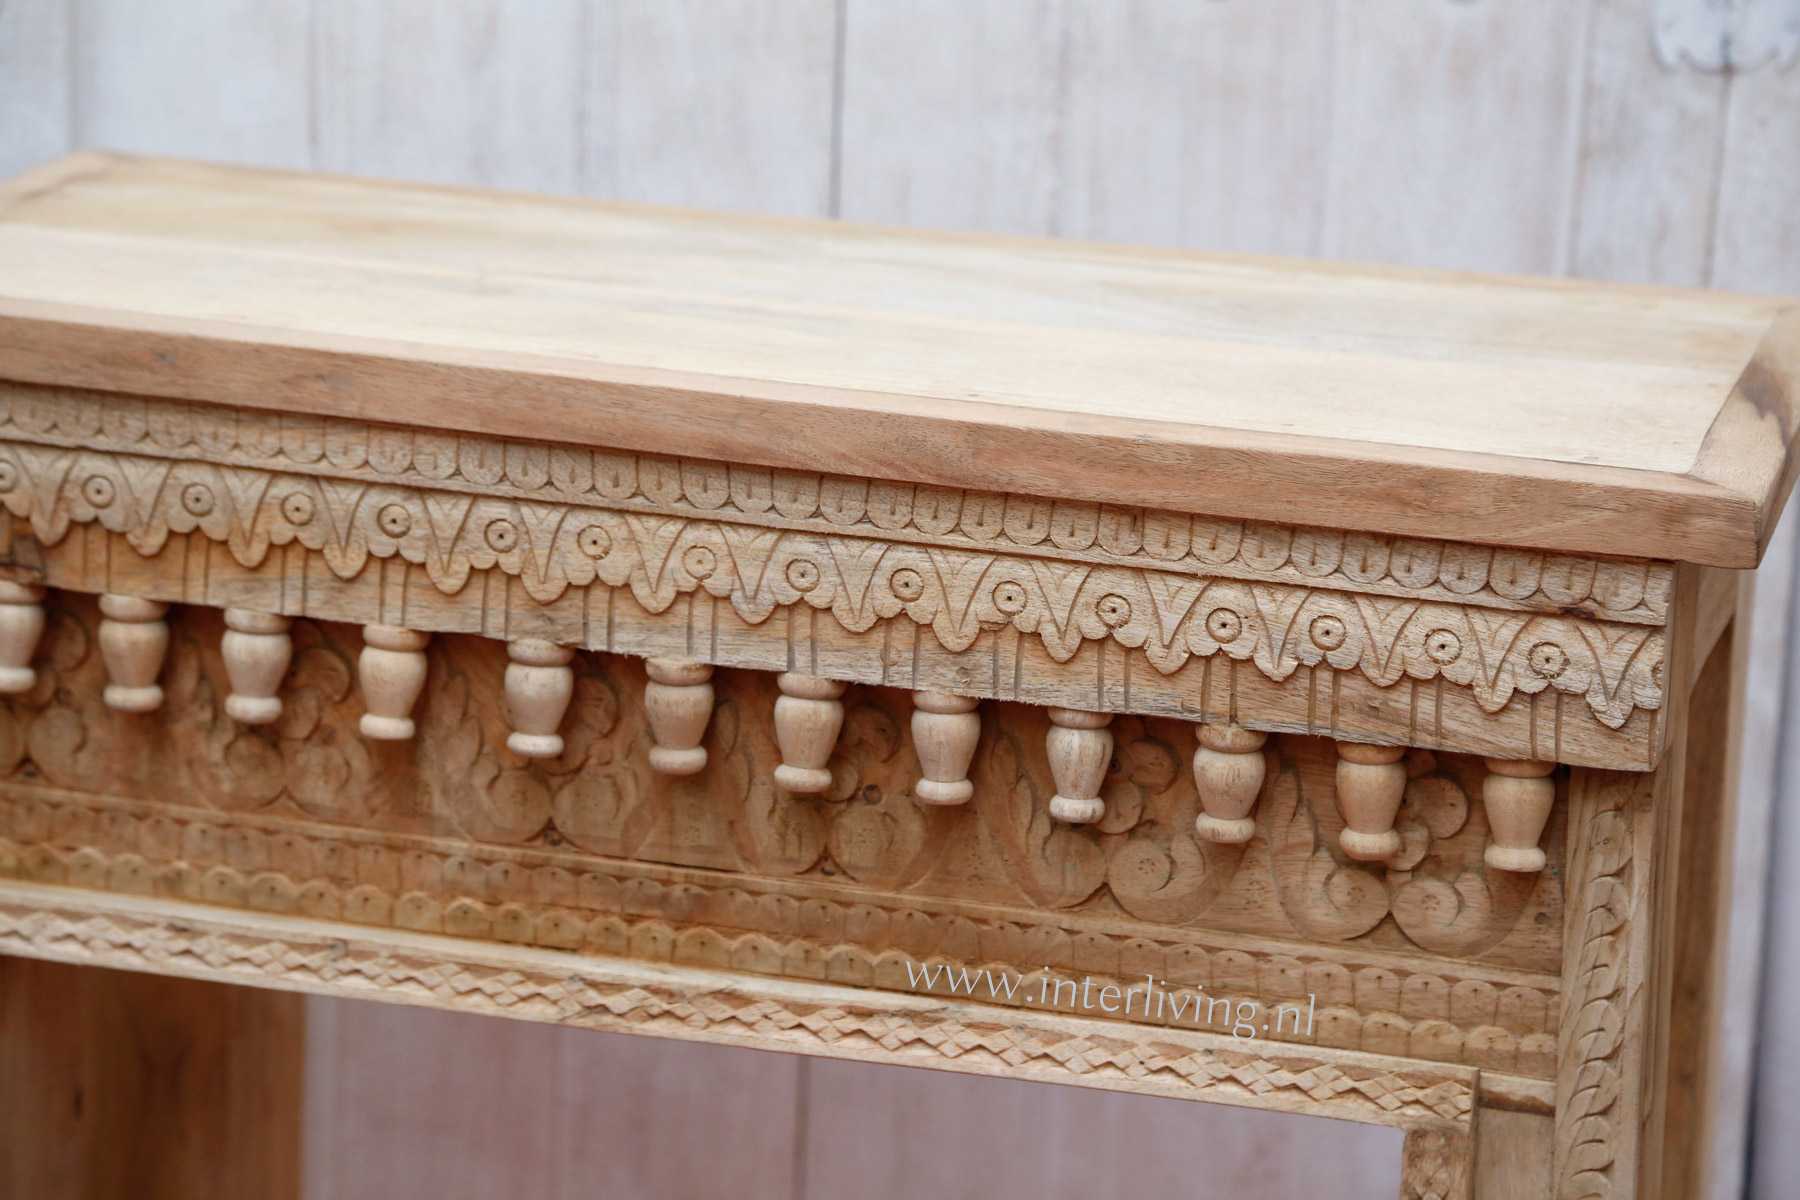 authentieke Jpdhpur houtsnijwerk uit India - mangohouten meubelen voor in huis - boho styling idee woonstijl